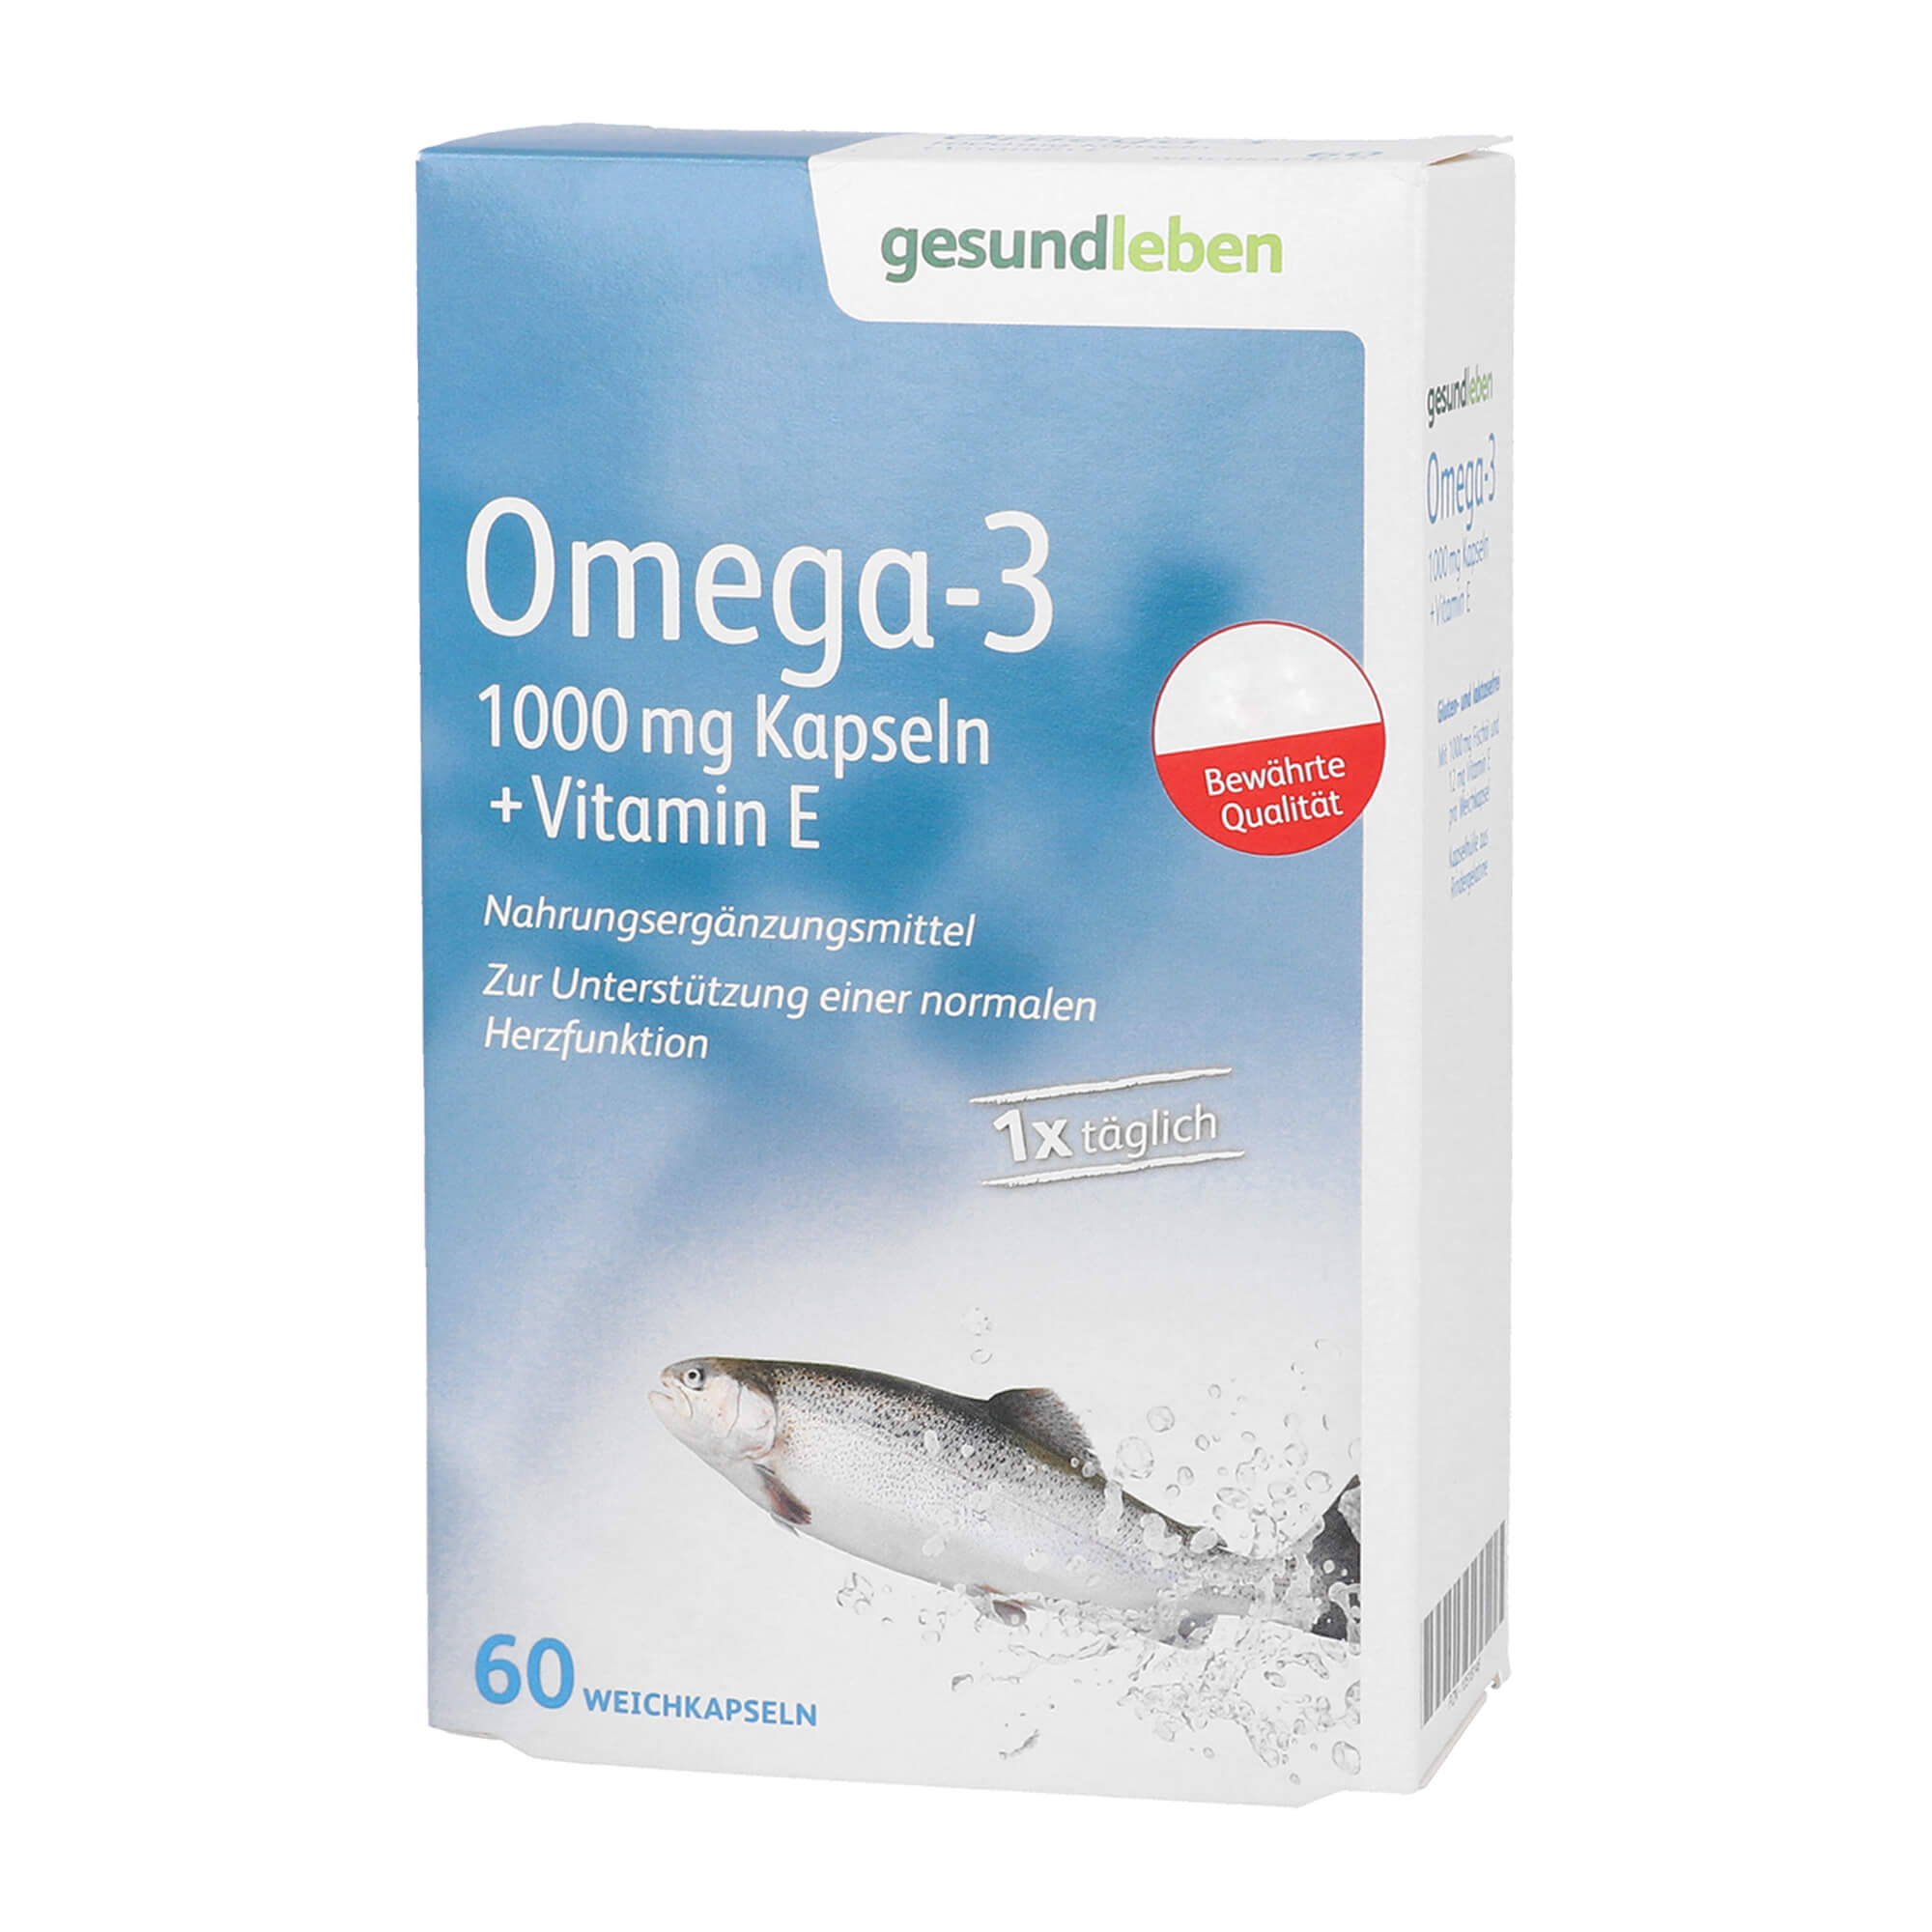 Nahrungsergänzungsmittel mit Omega-3 Fettsäuren in hoher Konzentration.